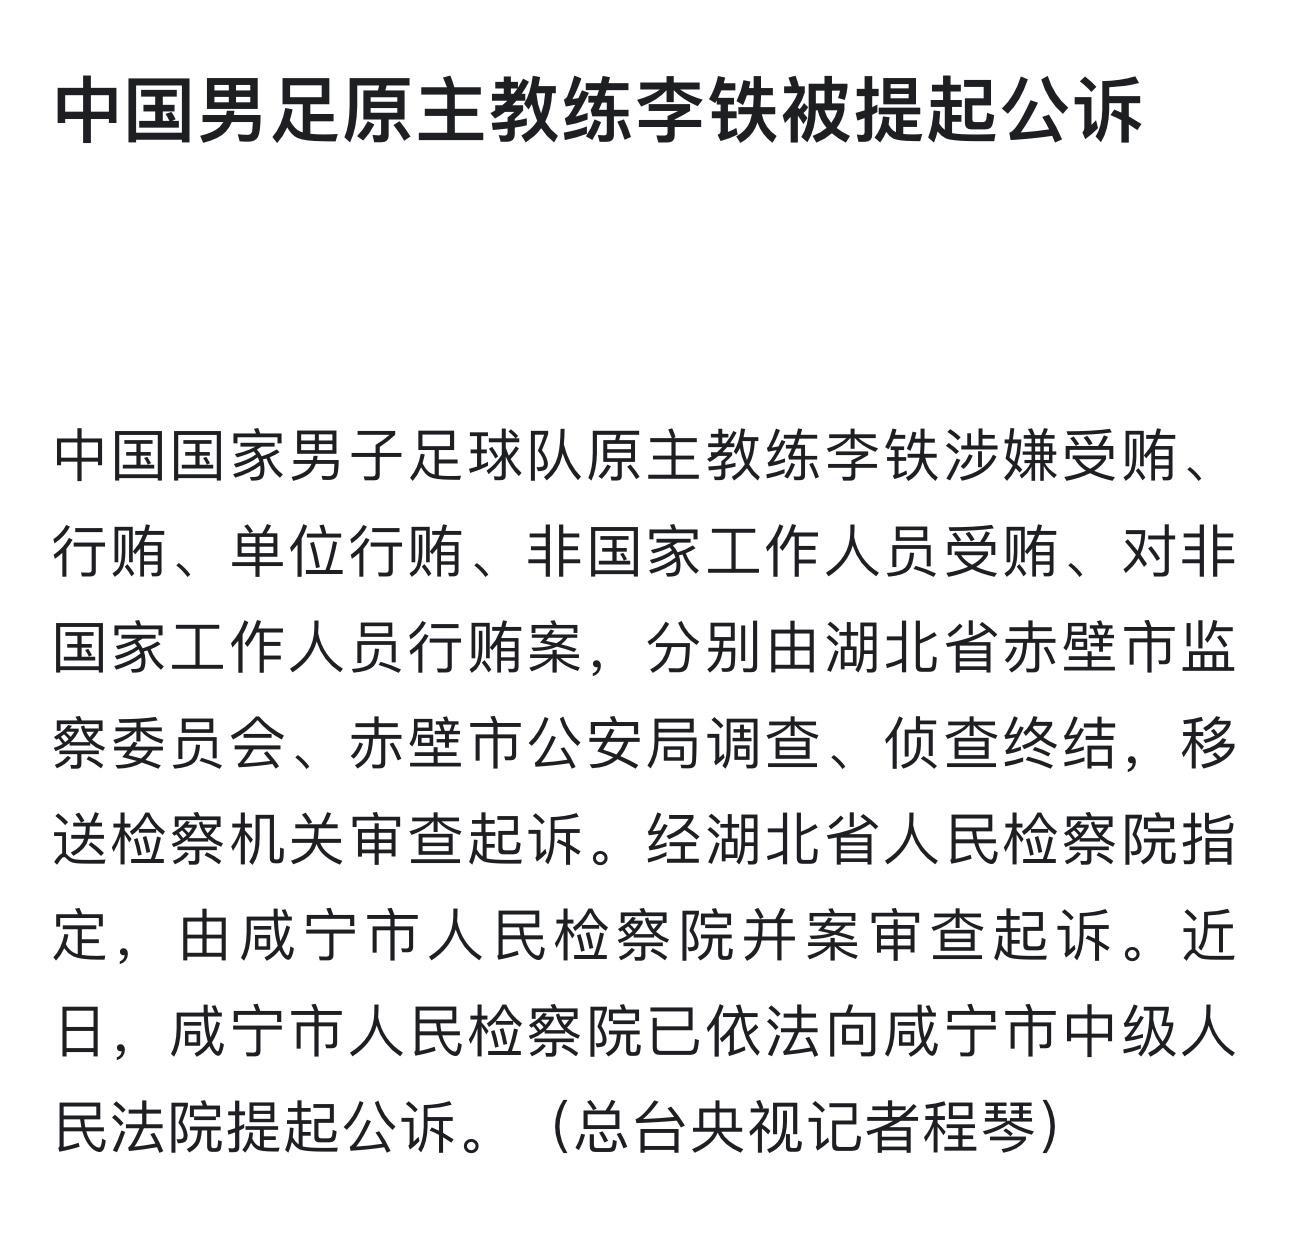 中国男足原主教练李铁被提起公诉，主要罪名是受贿、行贿。你们觉得他会被判多少年[d(1)